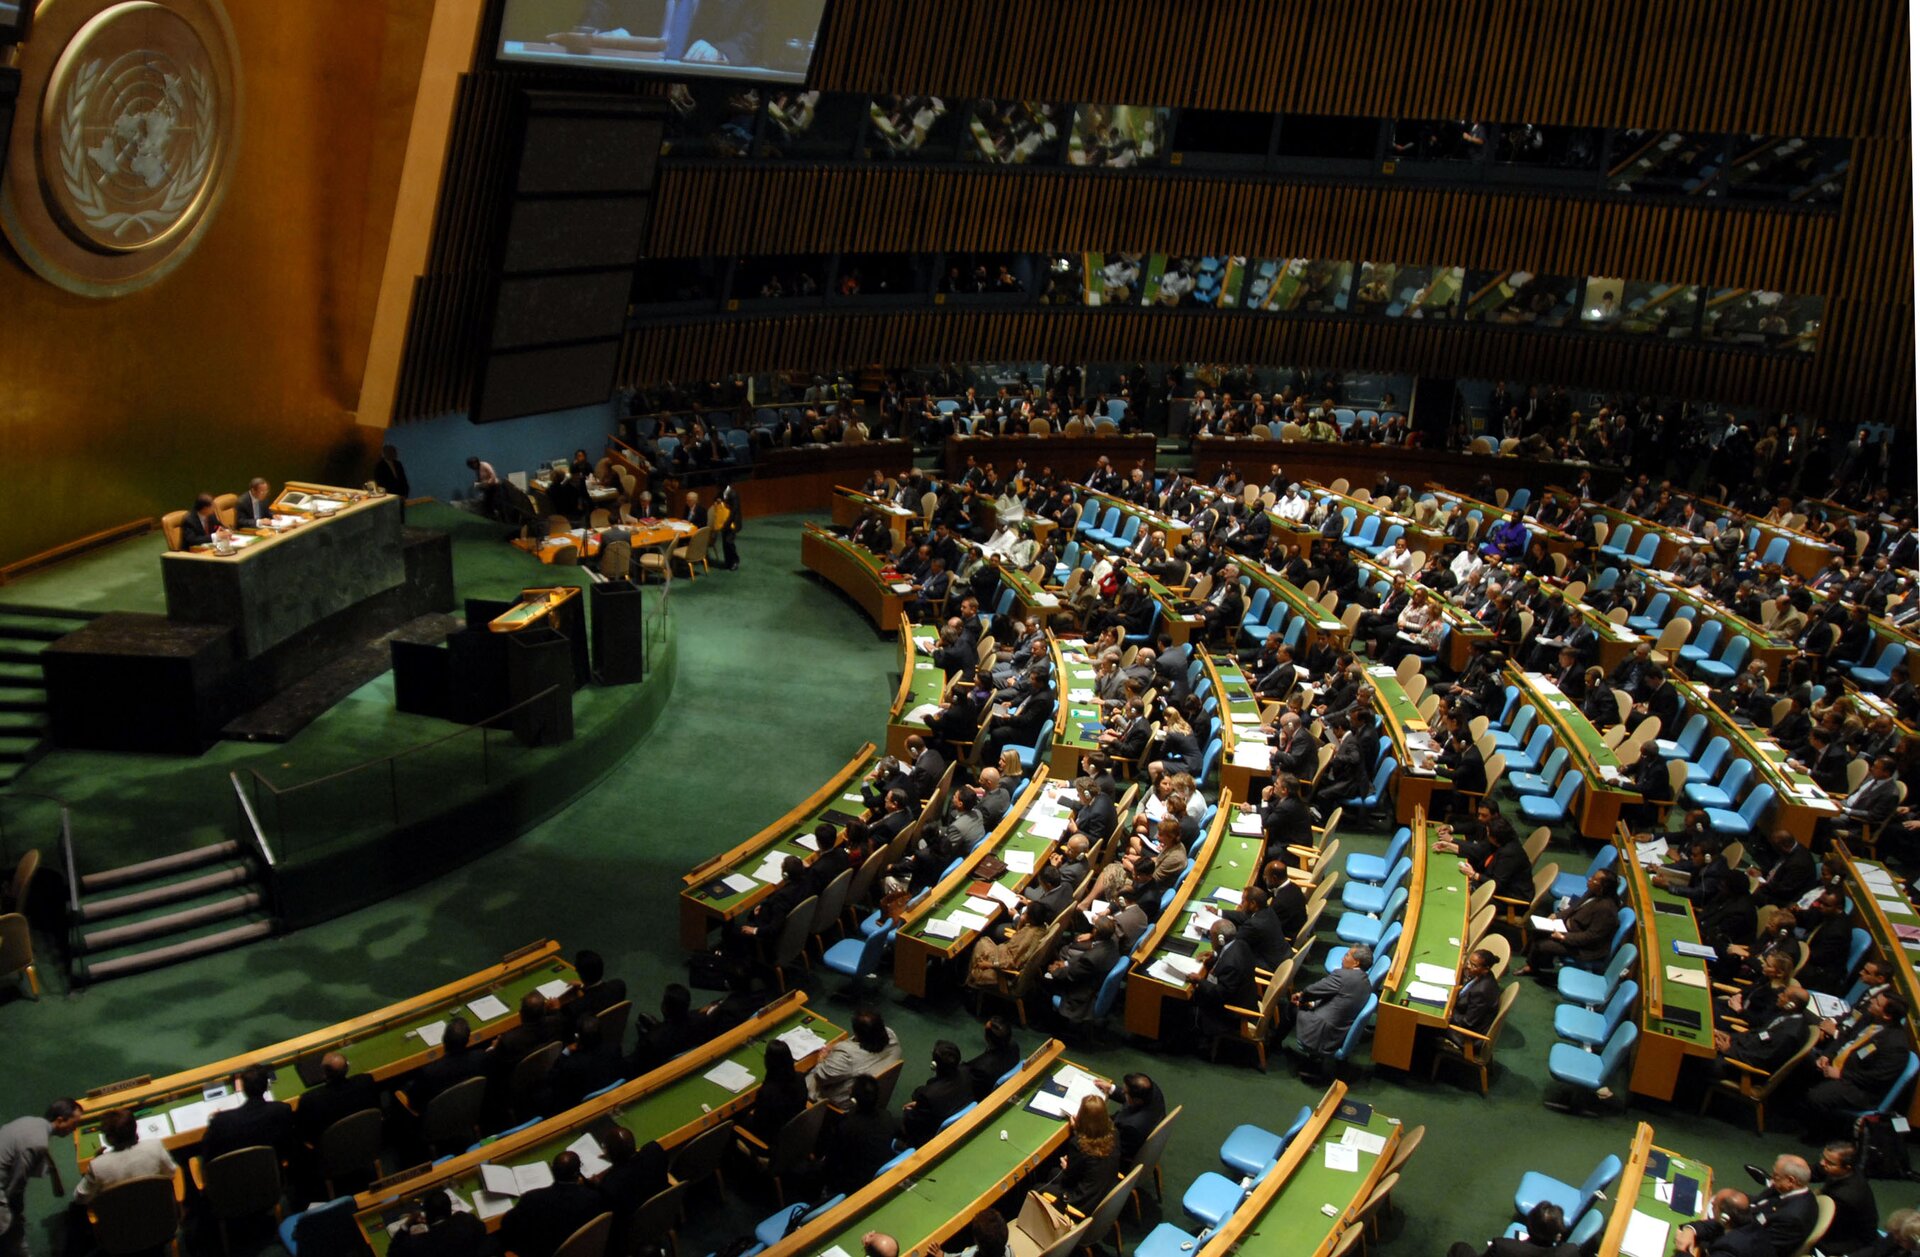 Zdjęcie dużej sali. W części głównej widoczne logo ONZ (lewy górny róg zdjęcia). Na podwyższeniu za stołem zasiada Sekretarz Generalny ONZ. Poniżej znajduje się mównica. Do mównicy prowadzą schody (po lewej stronie zdjęcia). W pozostałej części sali umieszczone są krzesła dla przedstawicieli państw biorących udział w obradach, gości zaproszonych, mediów (prawa strona zdjęcia). Na stołach widoczne są kartki. Na górze zdjęcia zawieszony jest telebim.